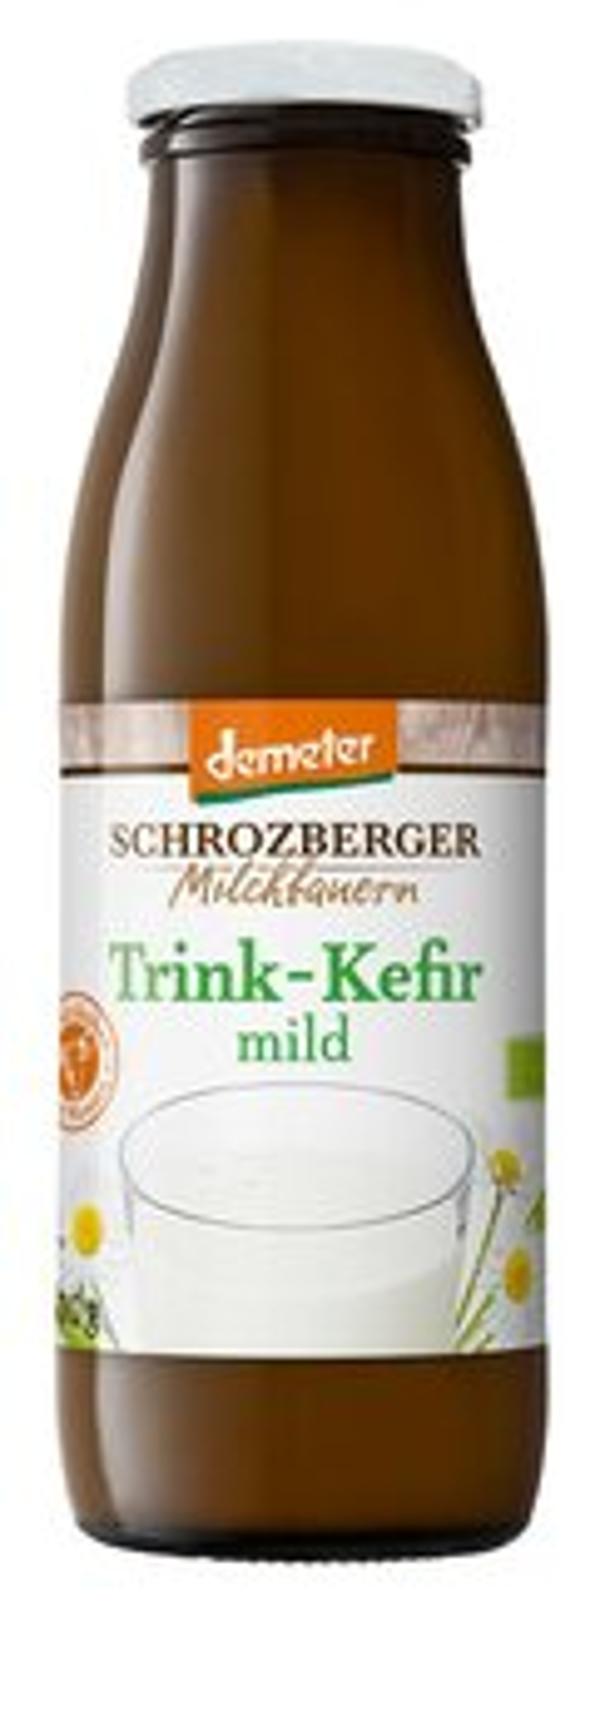 Produktfoto zu Trink-Kefir mild, 1,5% (Flasche) 0,5l